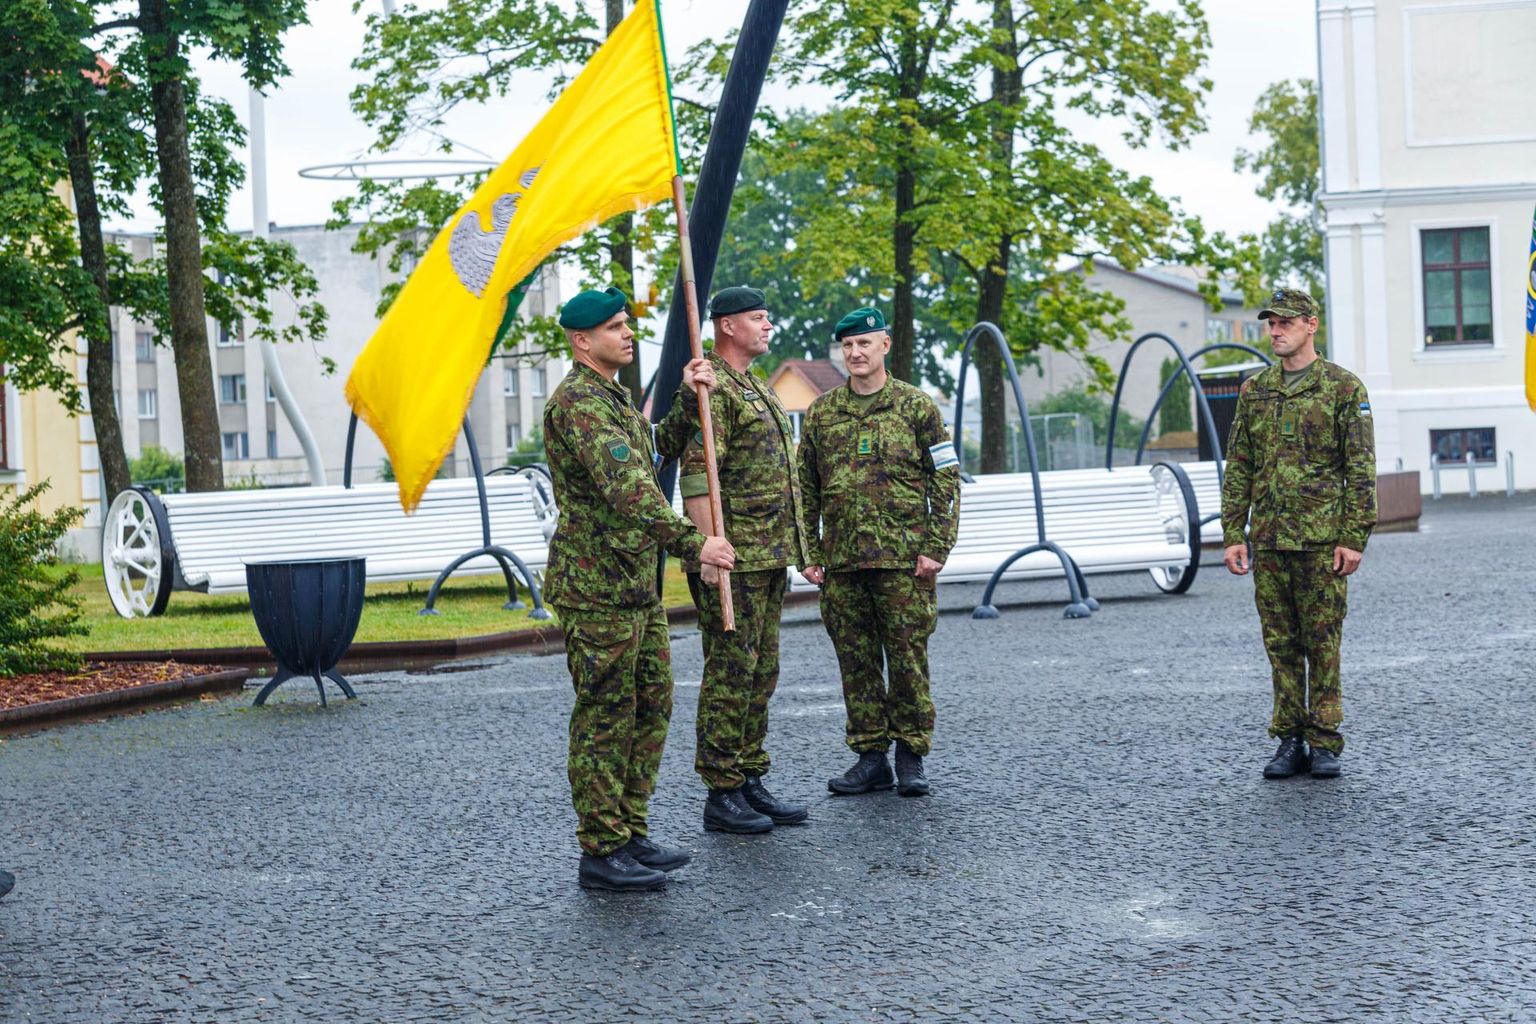 Maleva lipu tseremoniaalse ülevõtmisega astus esmaspäeva õhtul ametisse Kaitseliidu Võrumaa maleva uus pealik major Vaido Siska.